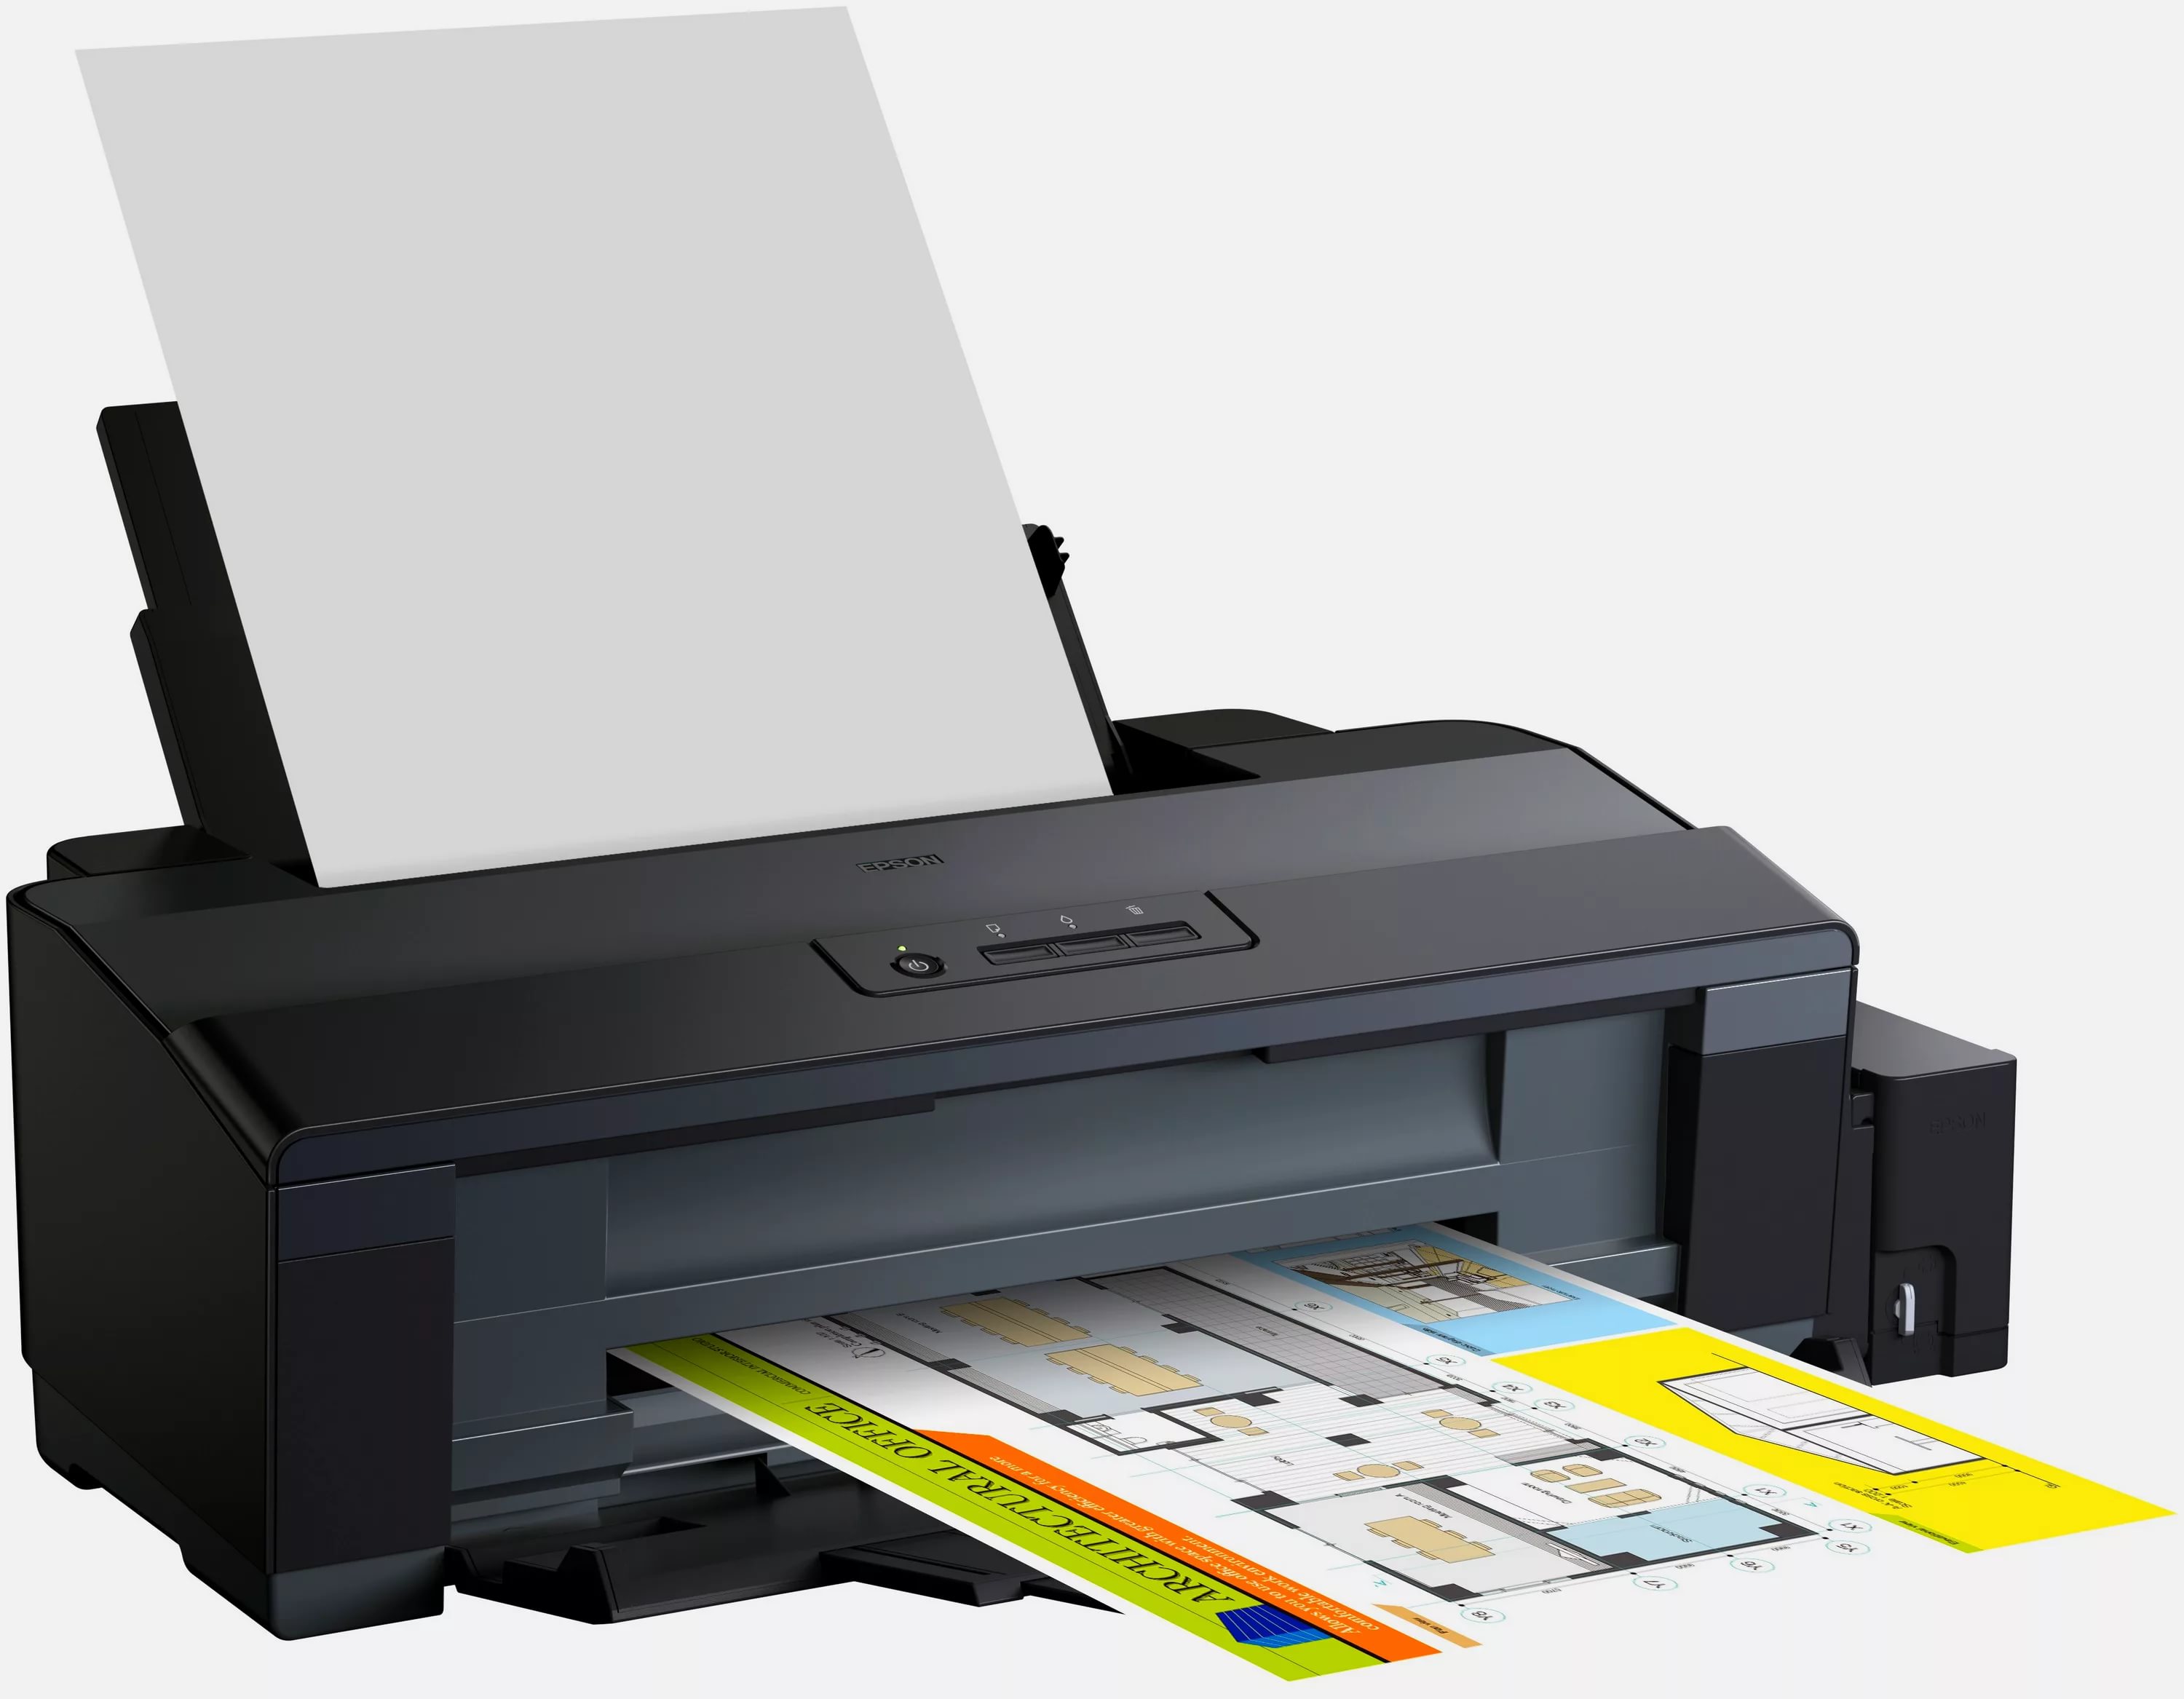 Принтер для распечатки документов. Принтер струйный Epson l1300. Принтер Epson l1800. Принтер струйный Epson l1800. Принтер струйный Epson l132.